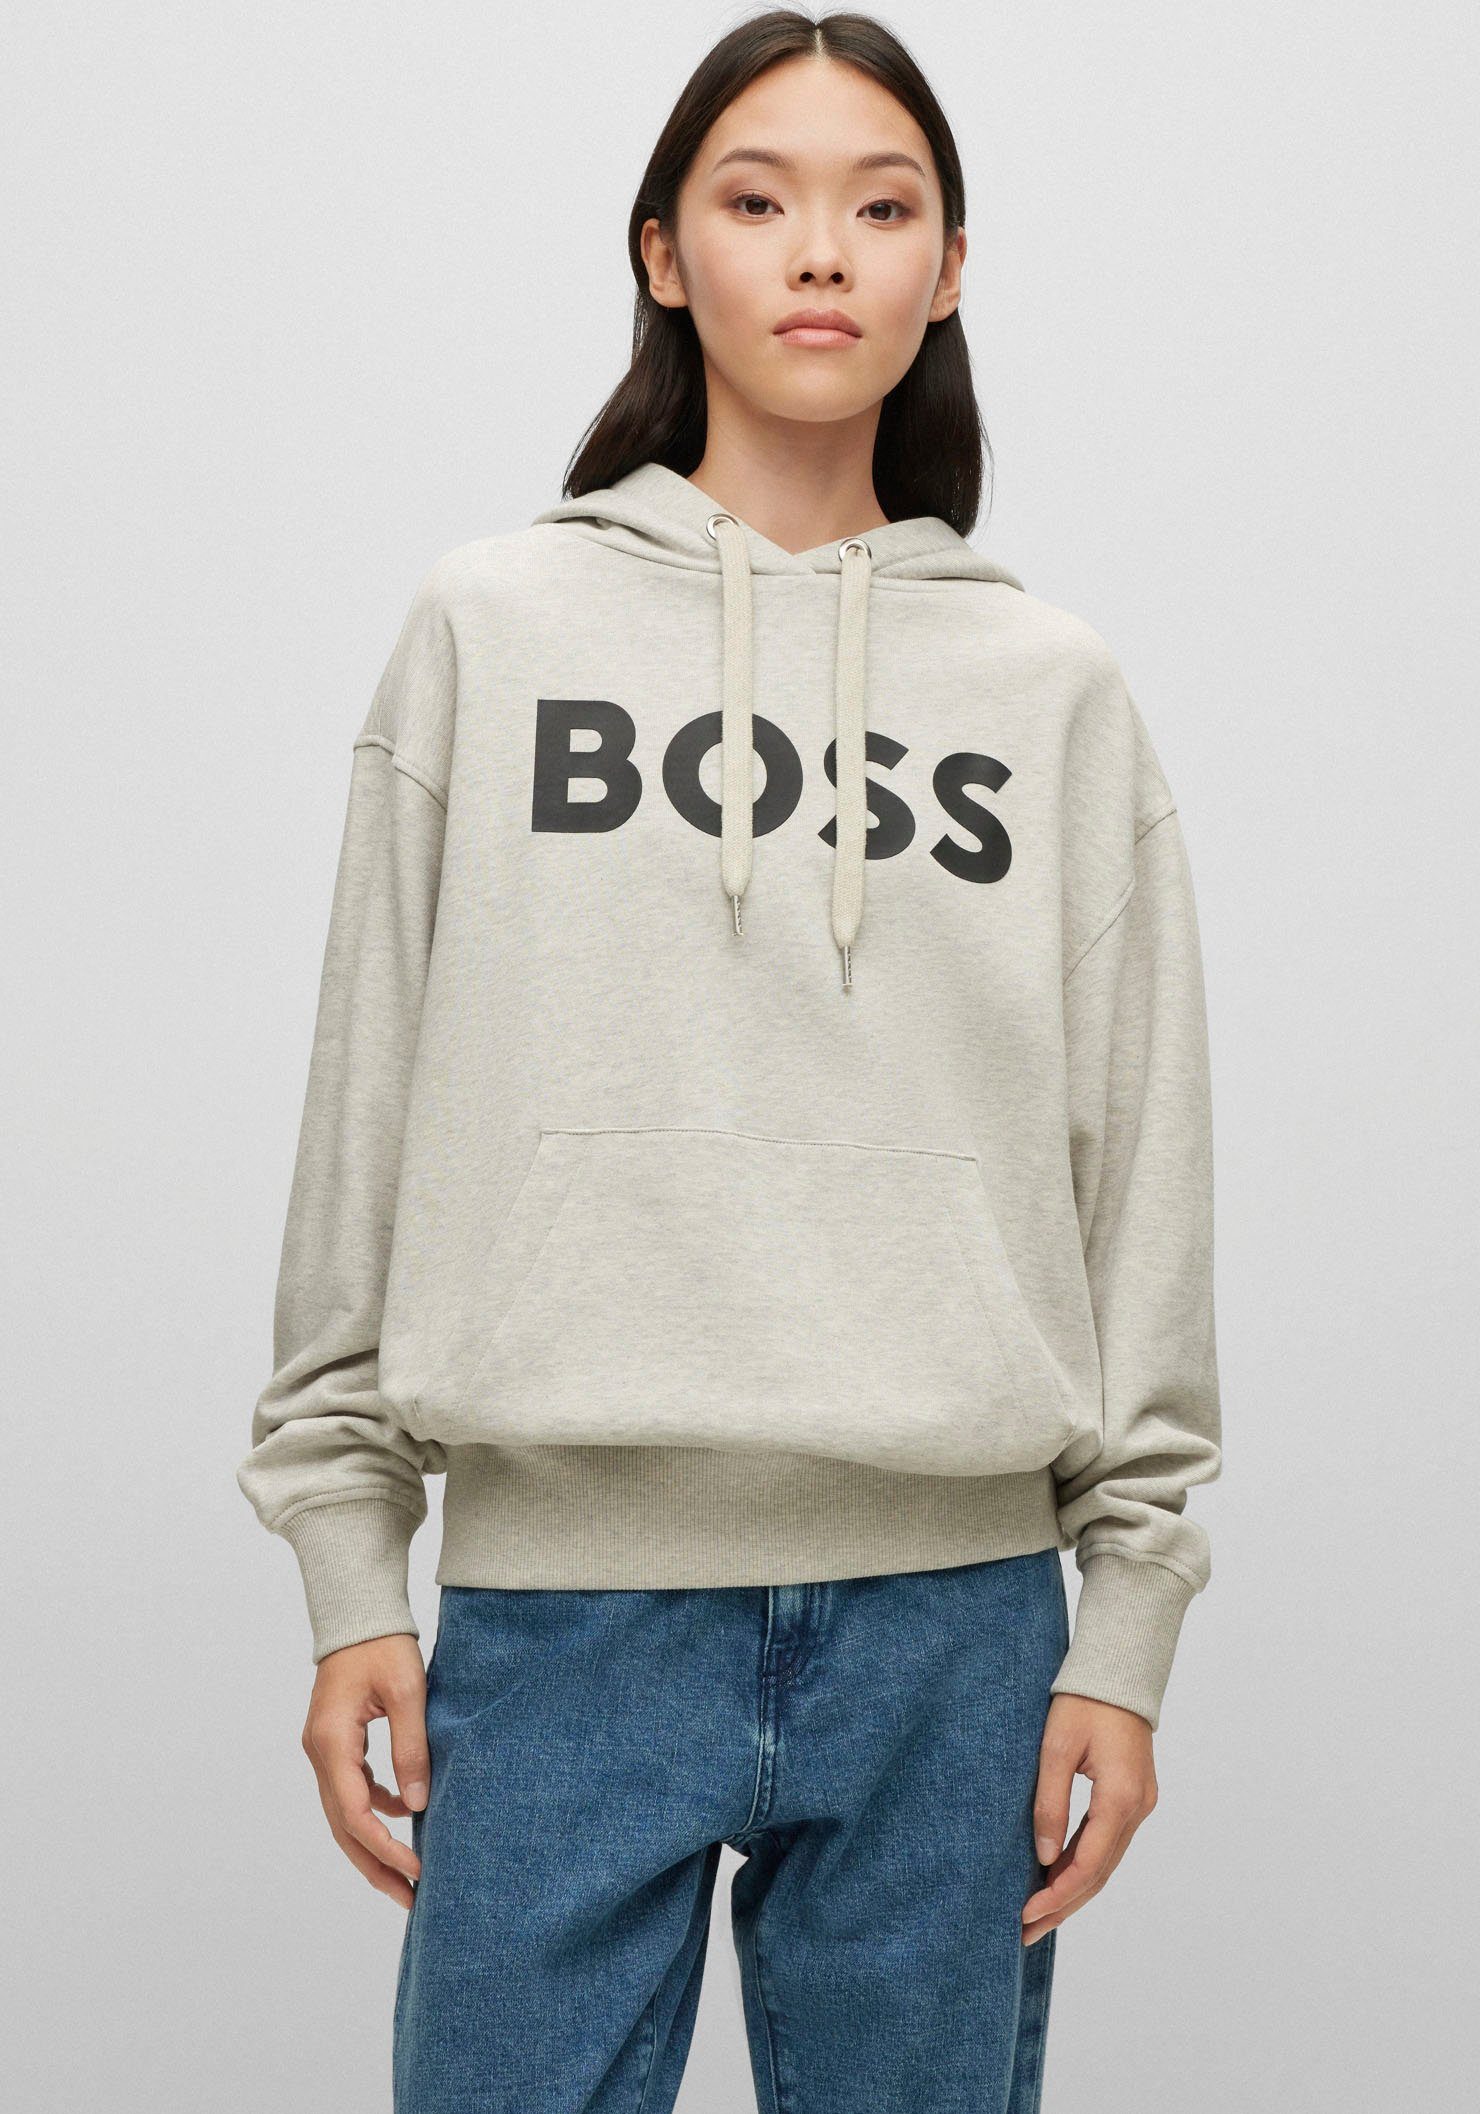 BOSS ORANGE Kapuzenshirt mit BOSS Logo Druck auf der Brust, Verstellbare  Kapuze mit Metallösen dank Kordelzug